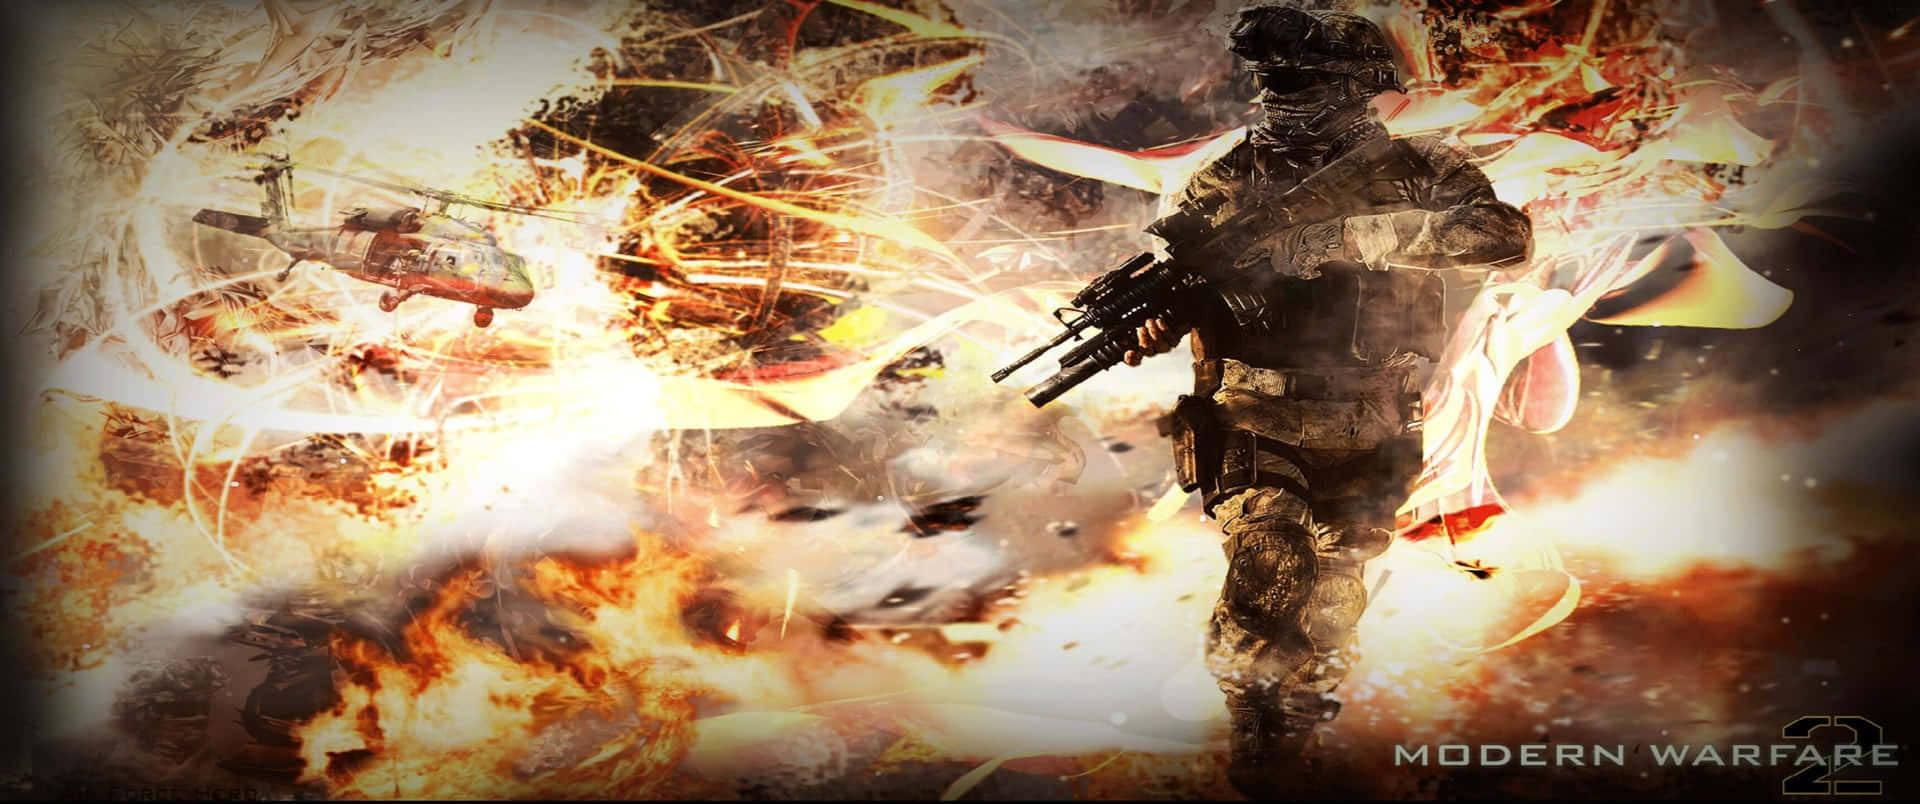 Granexplosión 3440x1440p Fondo De Pantalla De Call Of Duty Modern Warfare